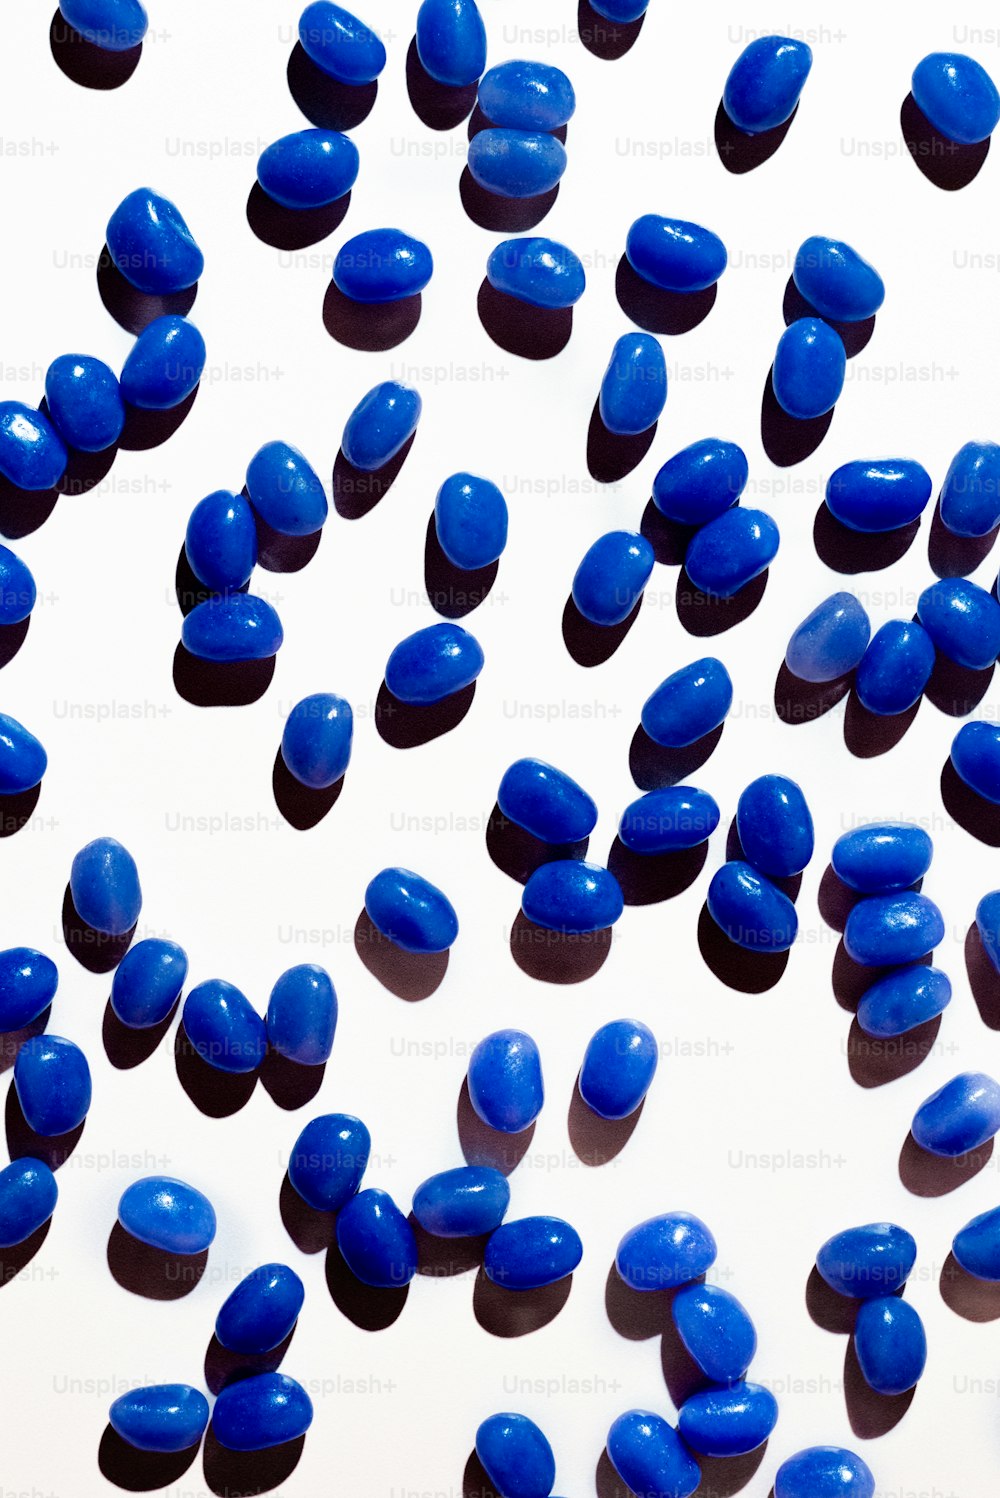 De nombreuses pilules bleues sont dispersées sur une surface blanche